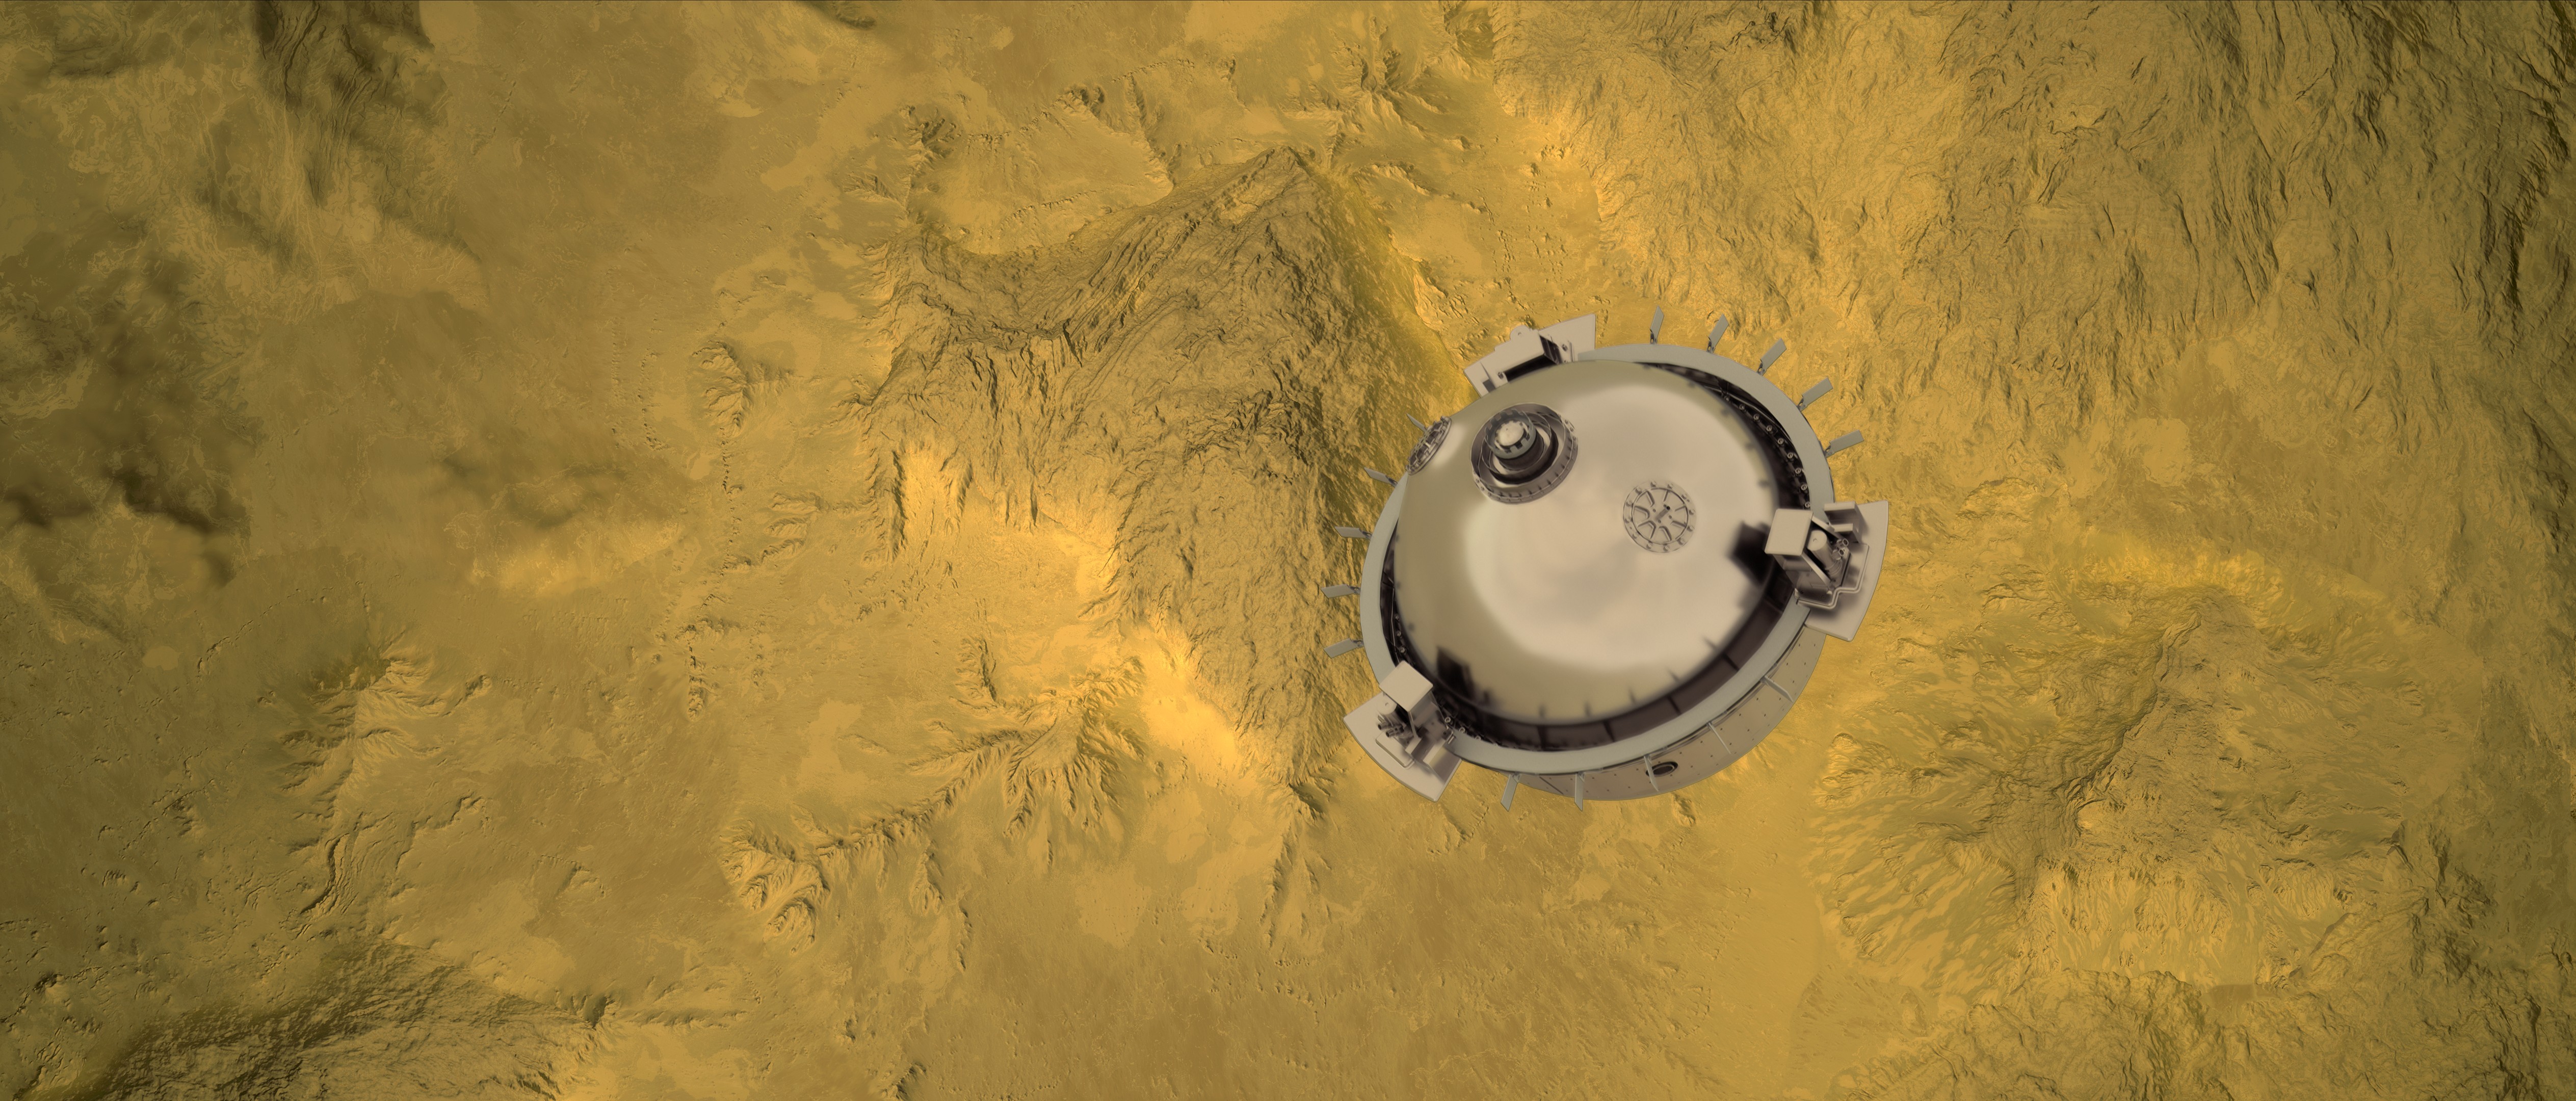 Divulgados os primeiros detalhes da missão DaVinci, que chegará em Vênus em 2031 (Foto: Divulgação/ NASA)